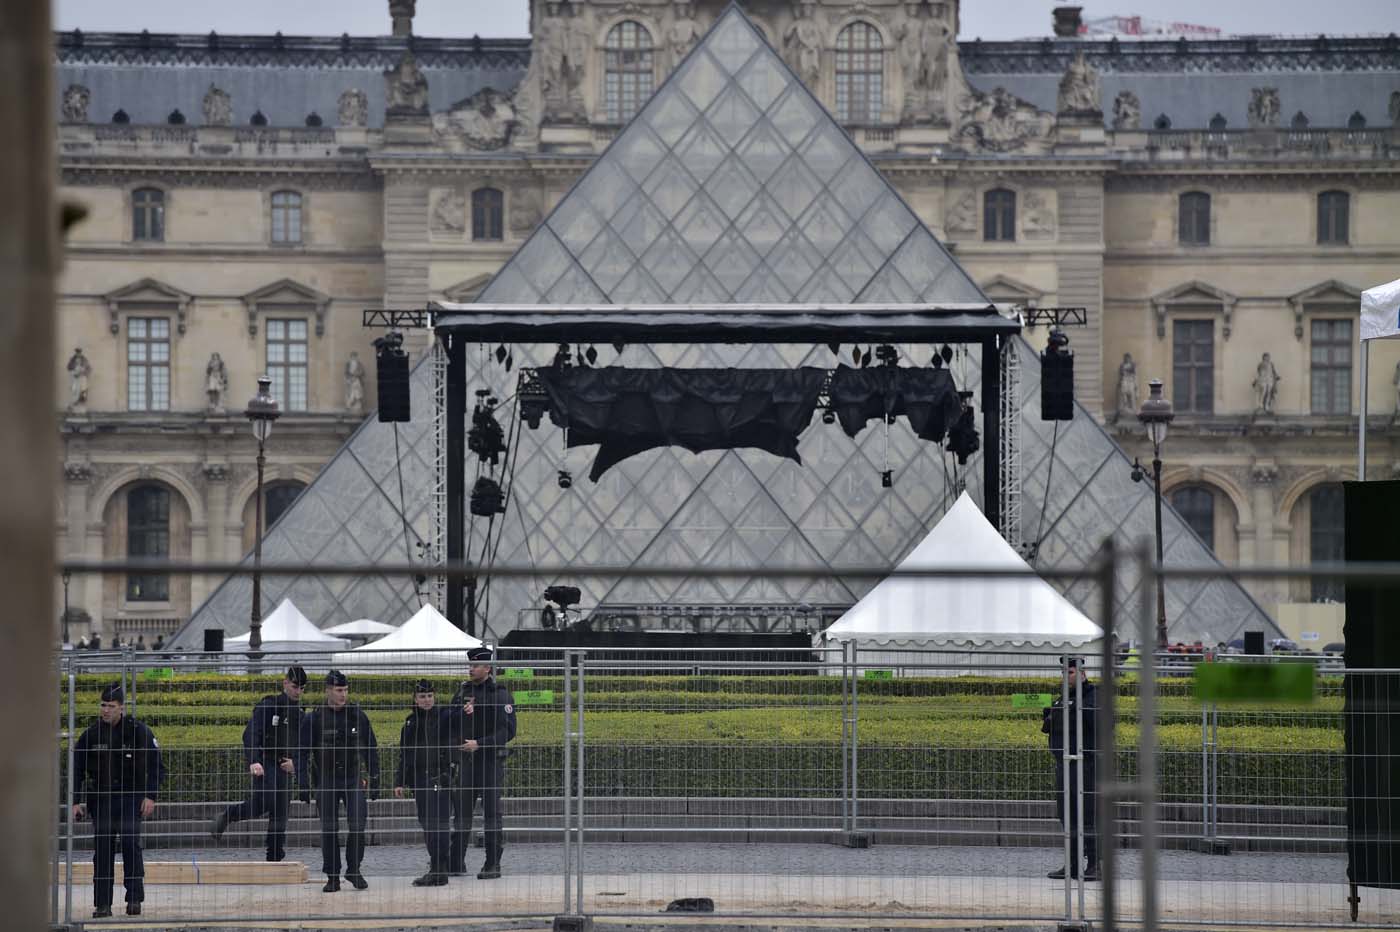 Explanada del Louvre evacuada brevemente tras alerta de seguridad durante presidenciales